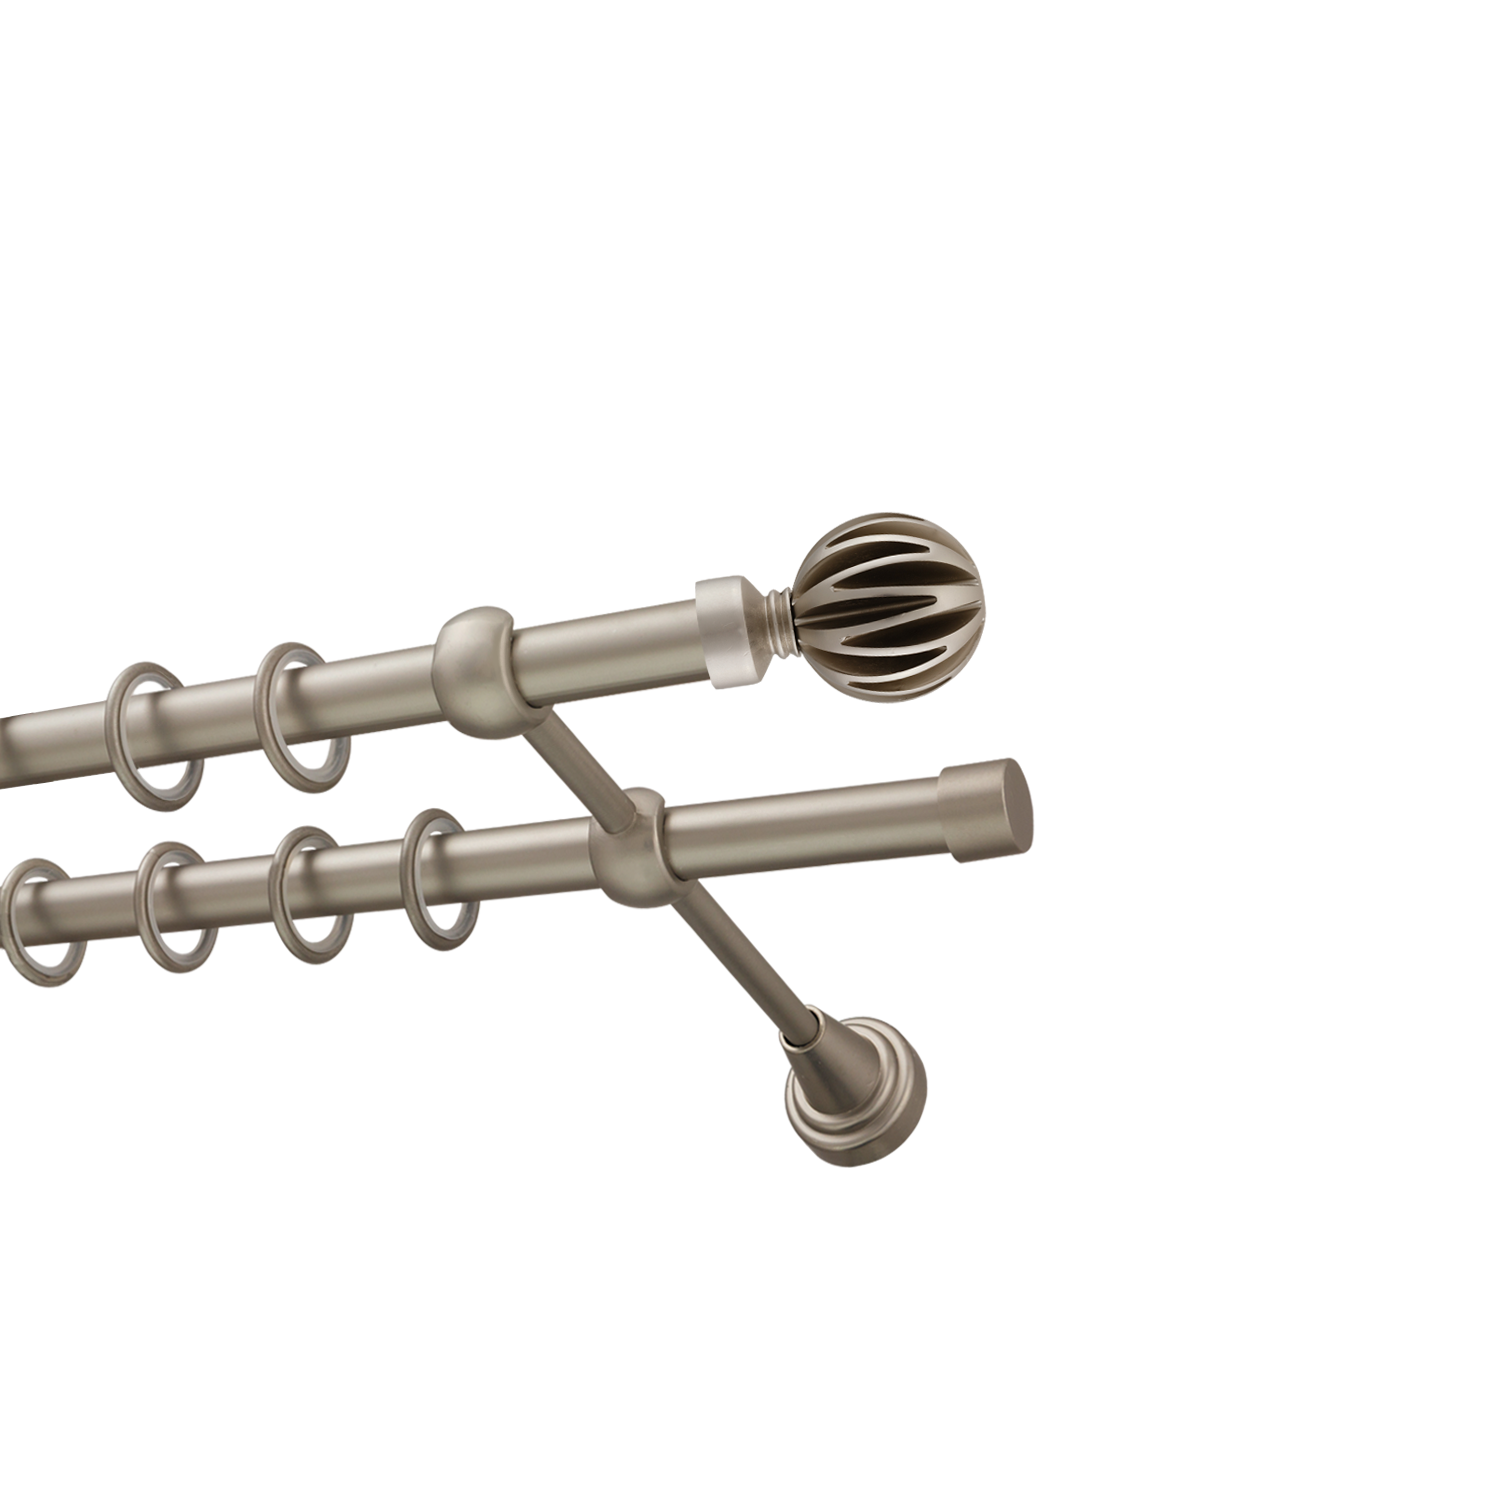 Металлический карниз для штор Шафран, двухрядный 16/16 мм, сталь, гладкая штанга, длина 300 см - фото Wikidecor.ru